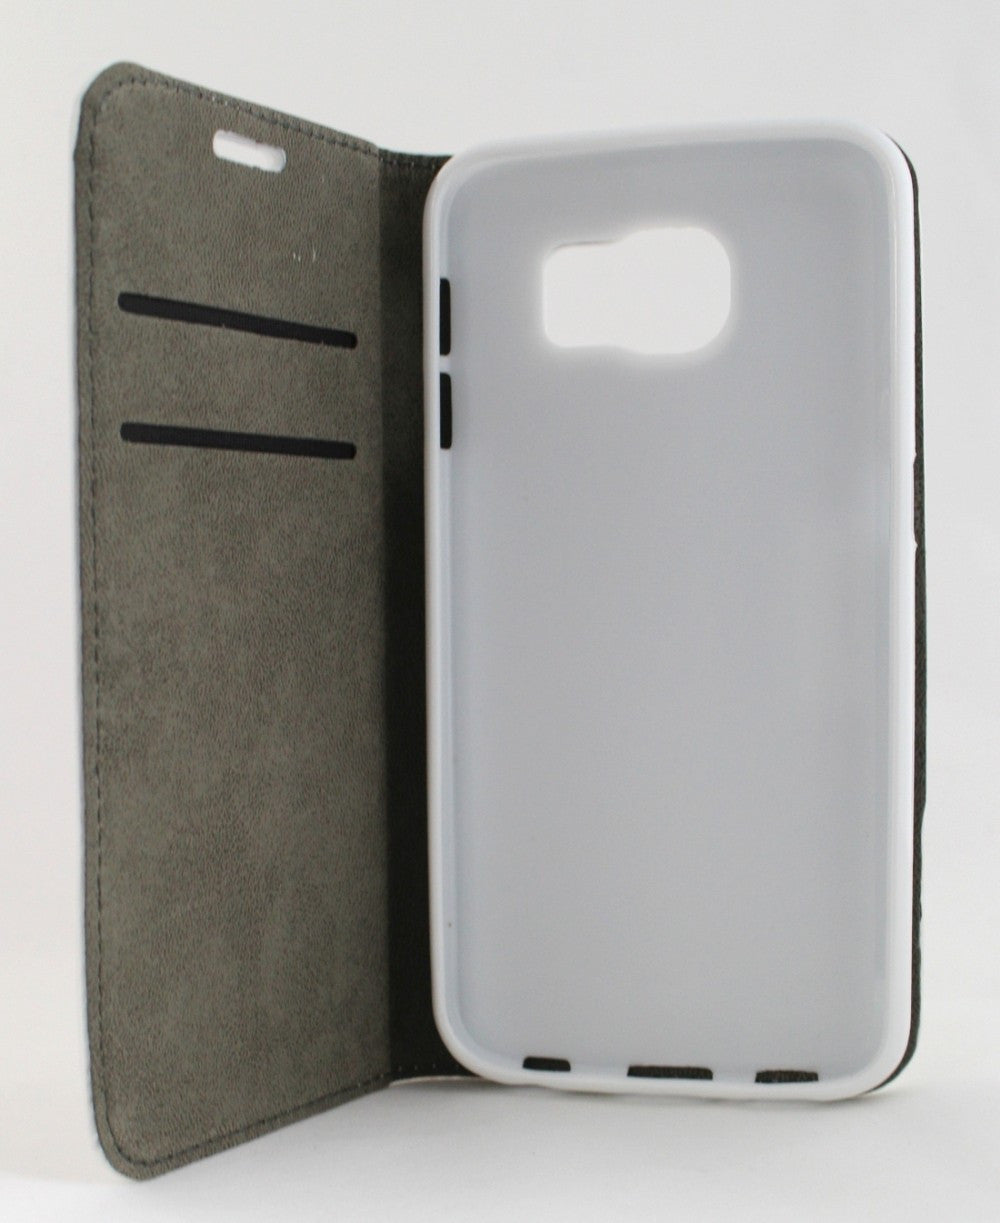 Θηκη Magnet Book απο Δερματινη - Samsung Galaxy S8 Plus - Λευκη - iThinksmart.gr